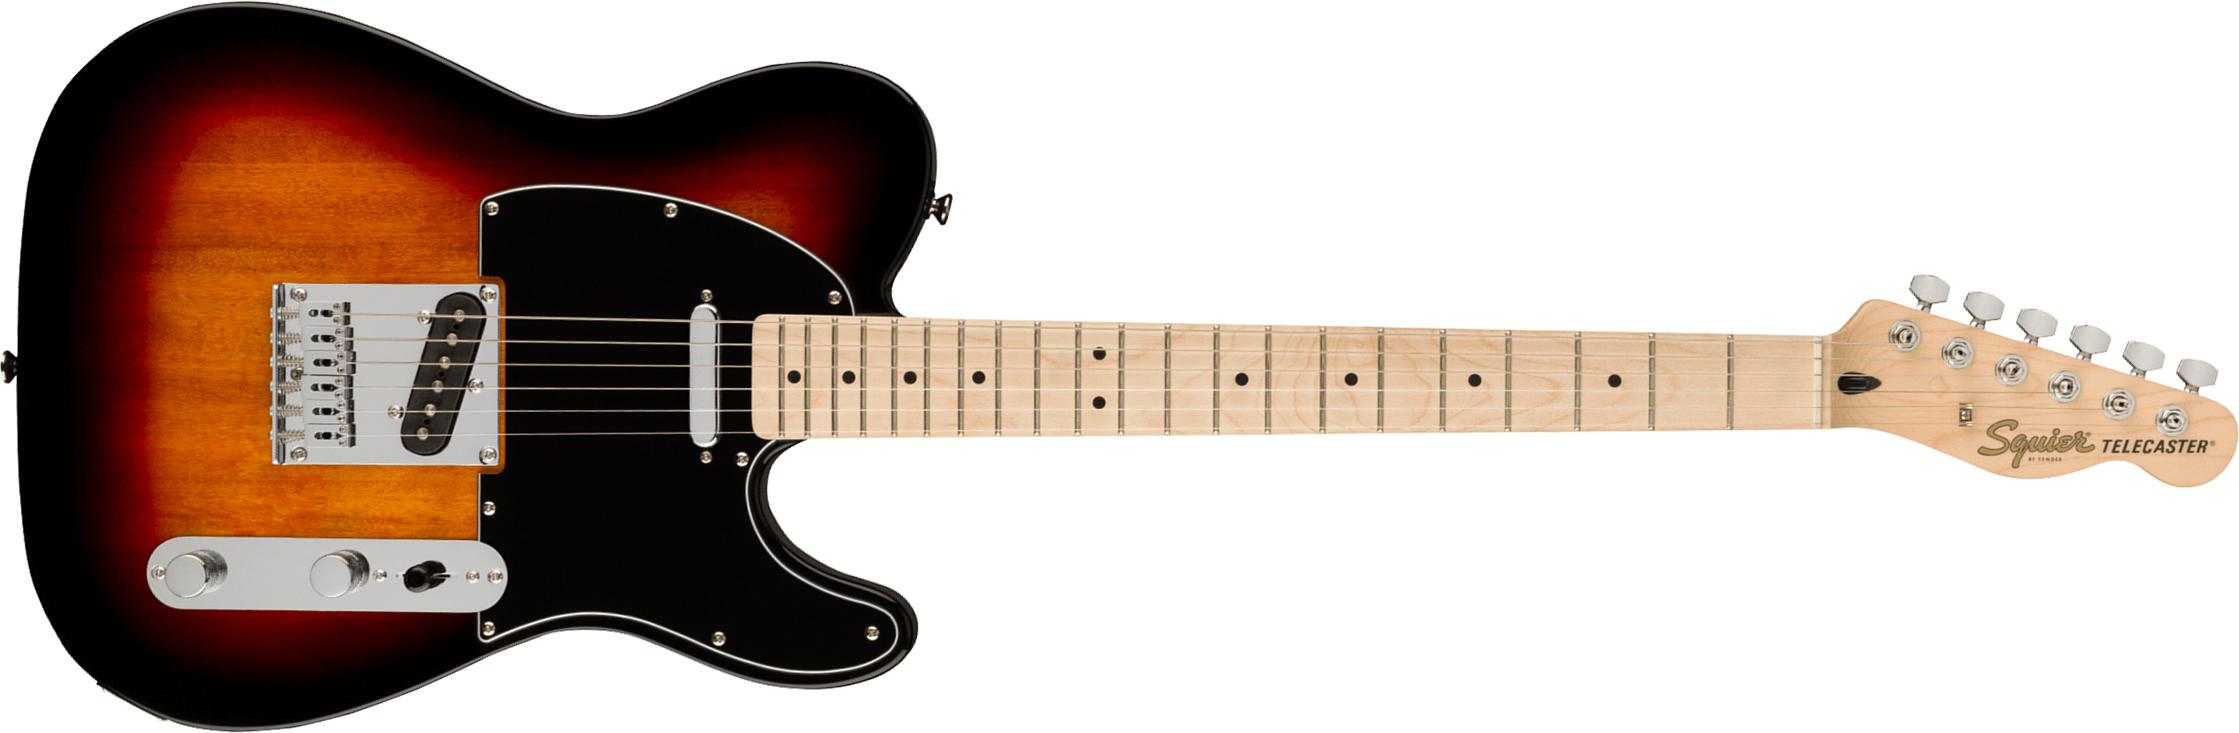 Squier Tele Affinity 2021 2s Mn - 3-color Sunburst - Tel shape electric guitar - Main picture